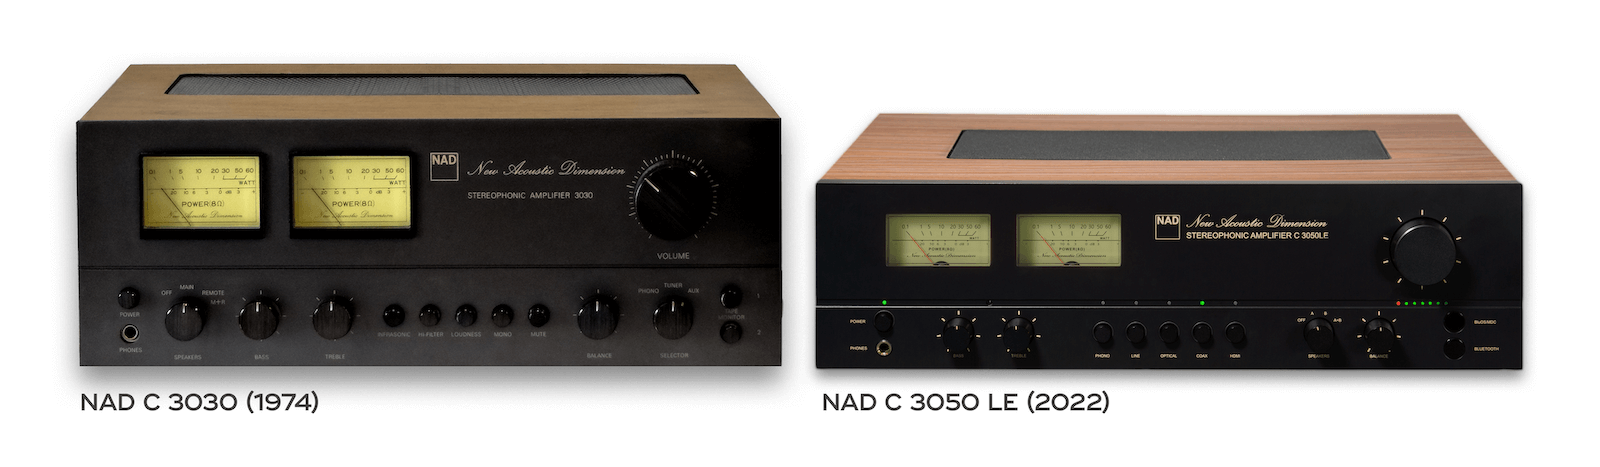 nad-c-3050-le- amplificador-integrado-nad-c-3030